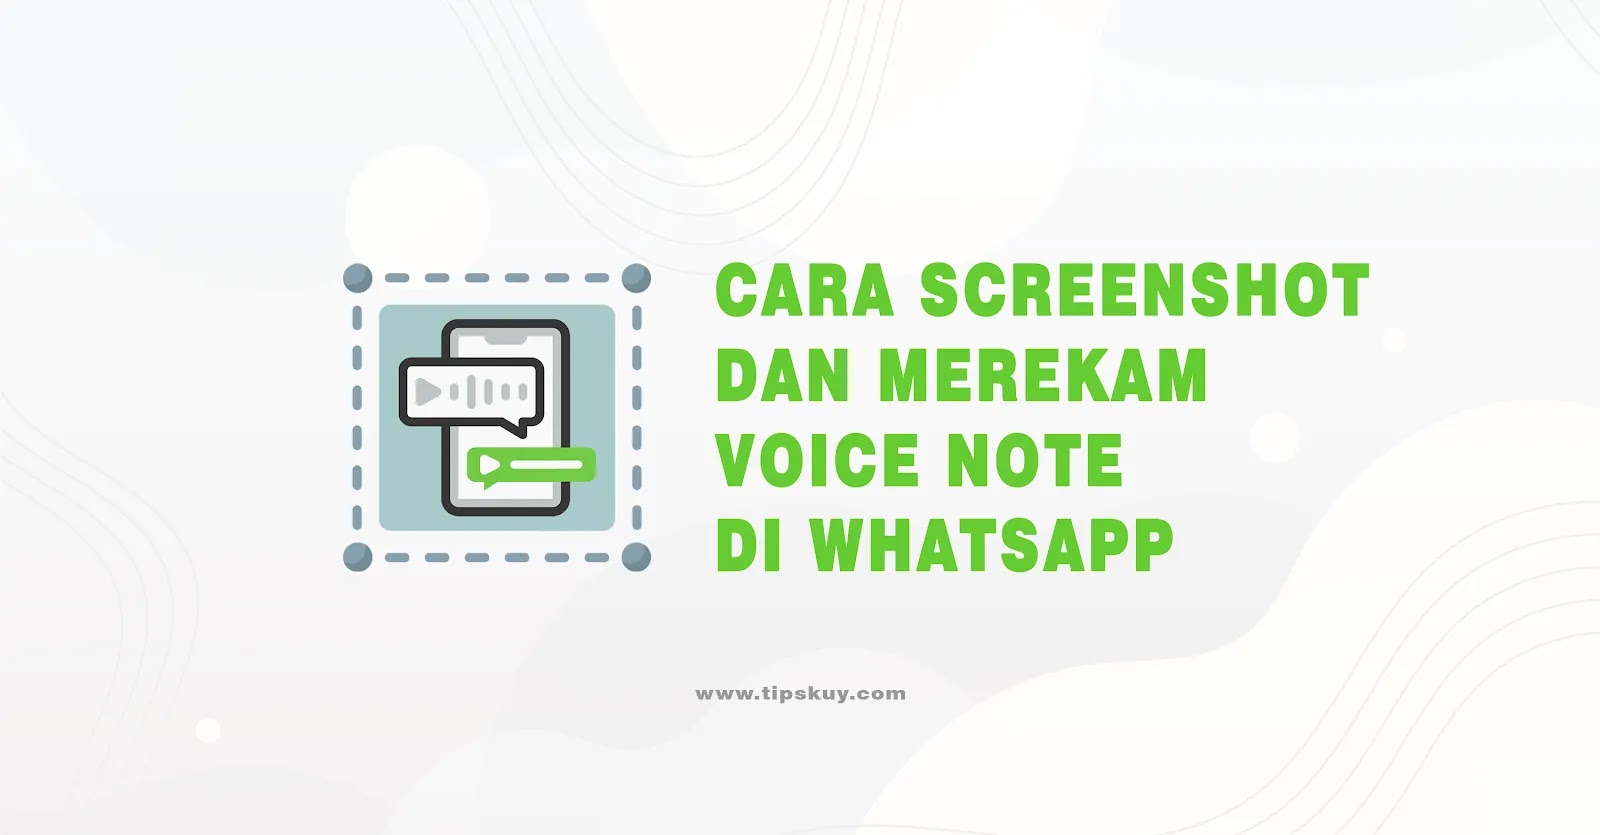 Cara Screenshot dan Merekam Voice Note di WhatsApp